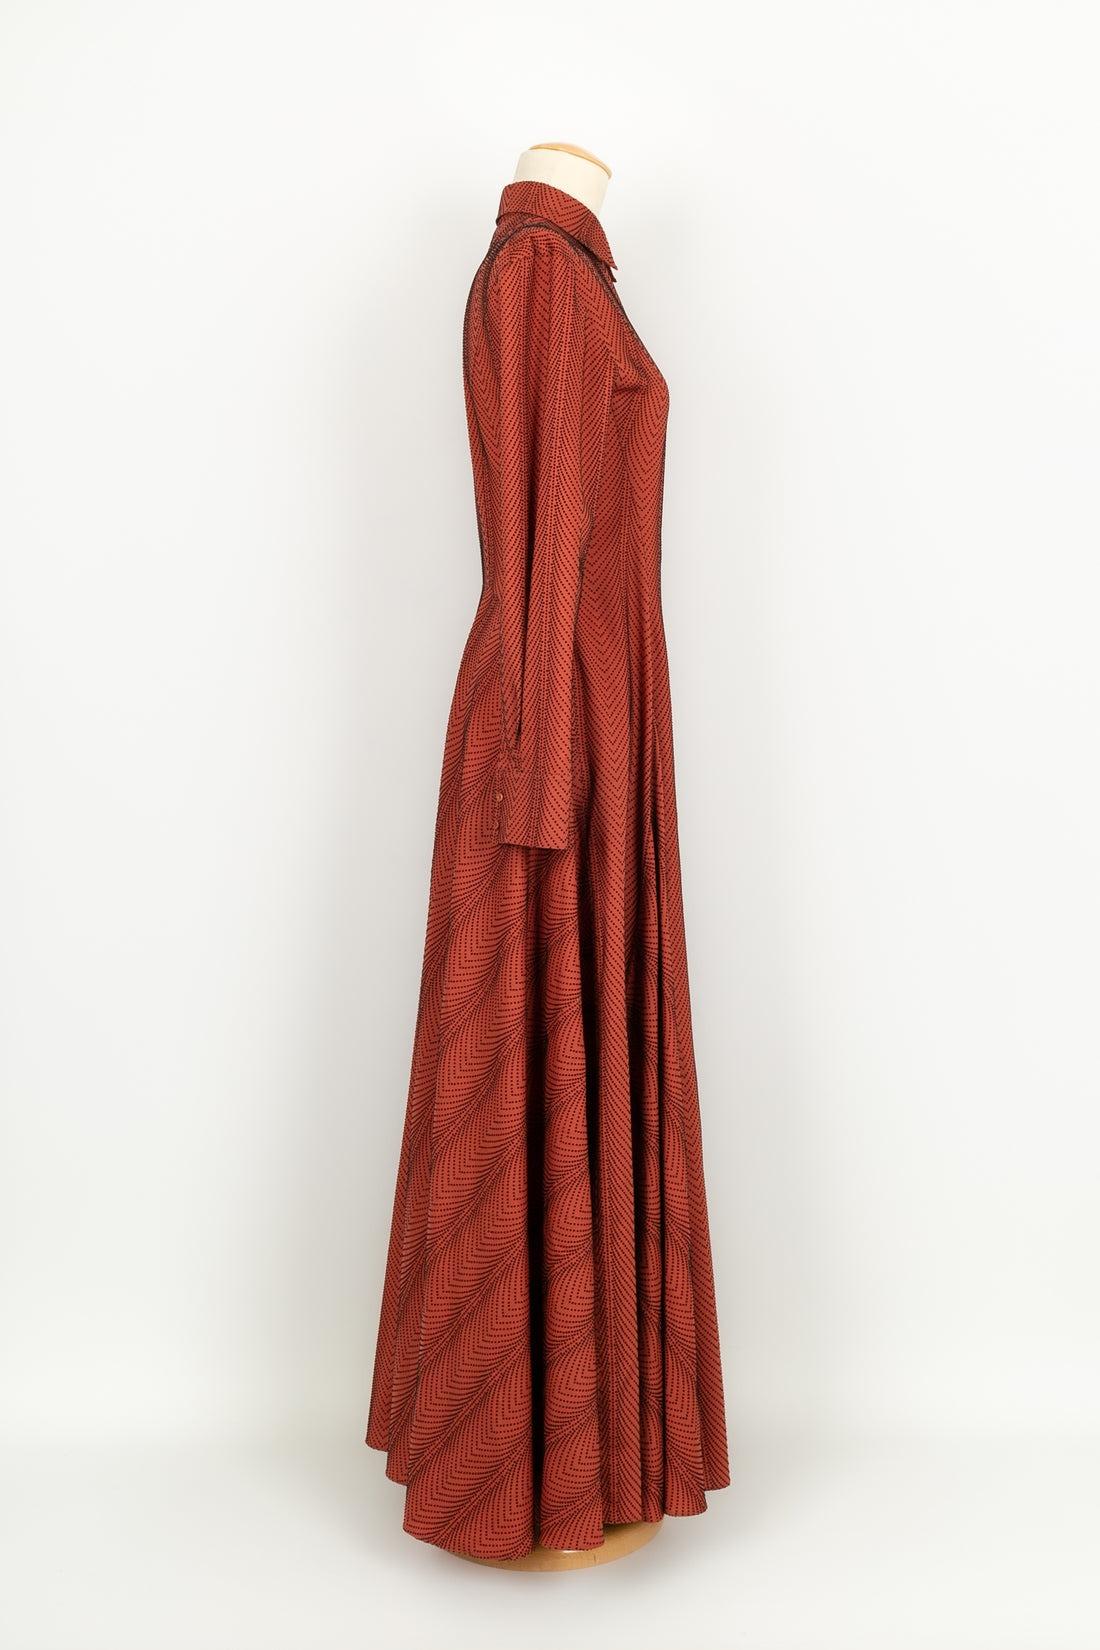 Alaïa - (Fabriqué en Italie) Longue robe évasée en laine marron/orange à pois noirs. Taille 38FR. Attention, deux boutons au niveau des poignets ont été changés.

Informations complémentaires :
Condit : Très bon état.
Dimensions : Largeur des